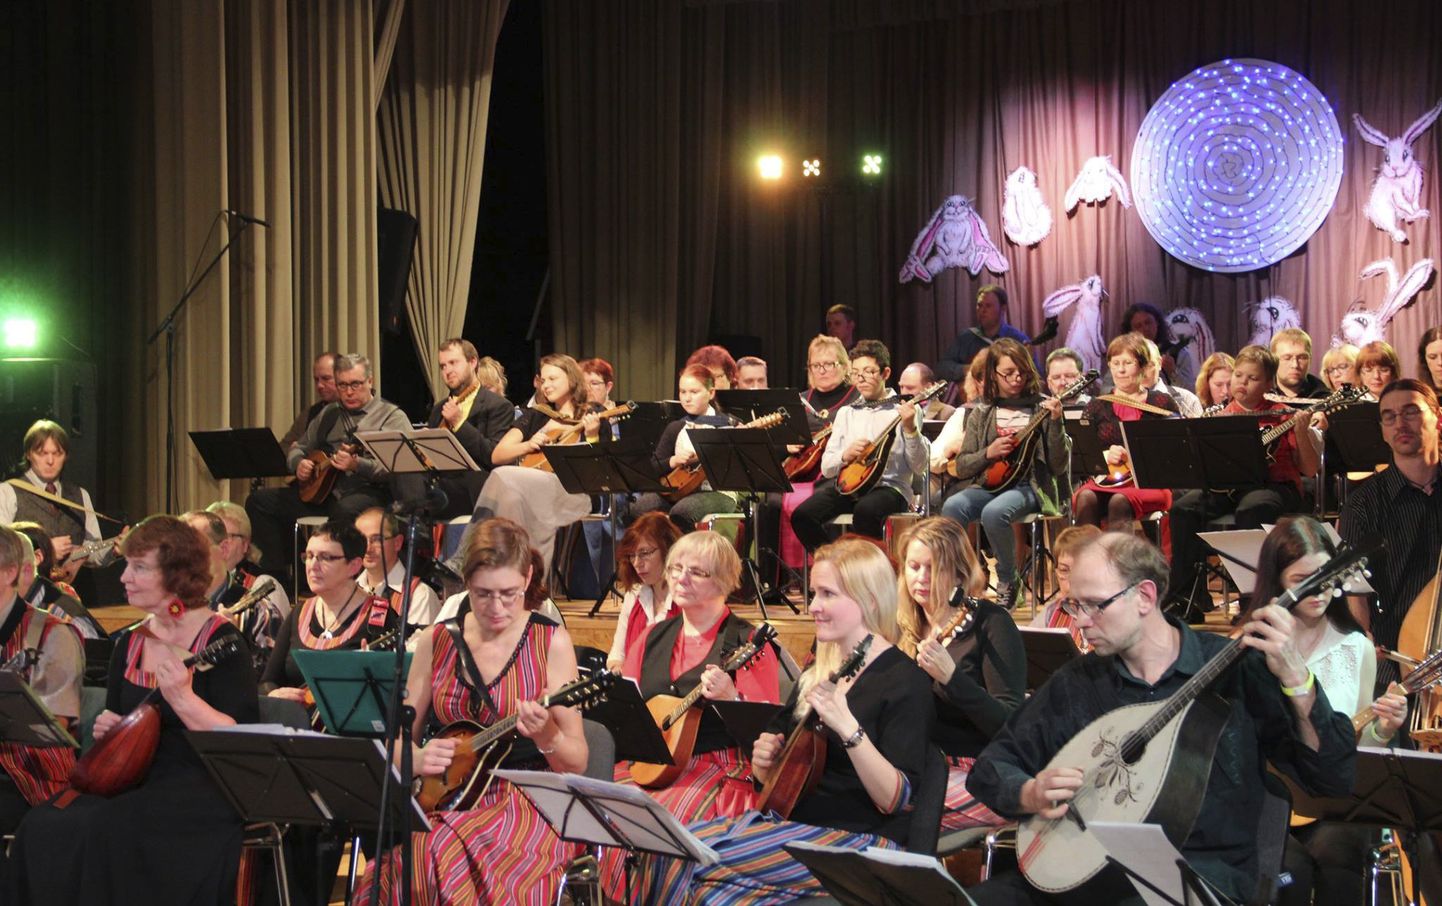 Eesti mandoliinimängijad on Lehtses ühiselt musitseerinud ka kahel korral varem.